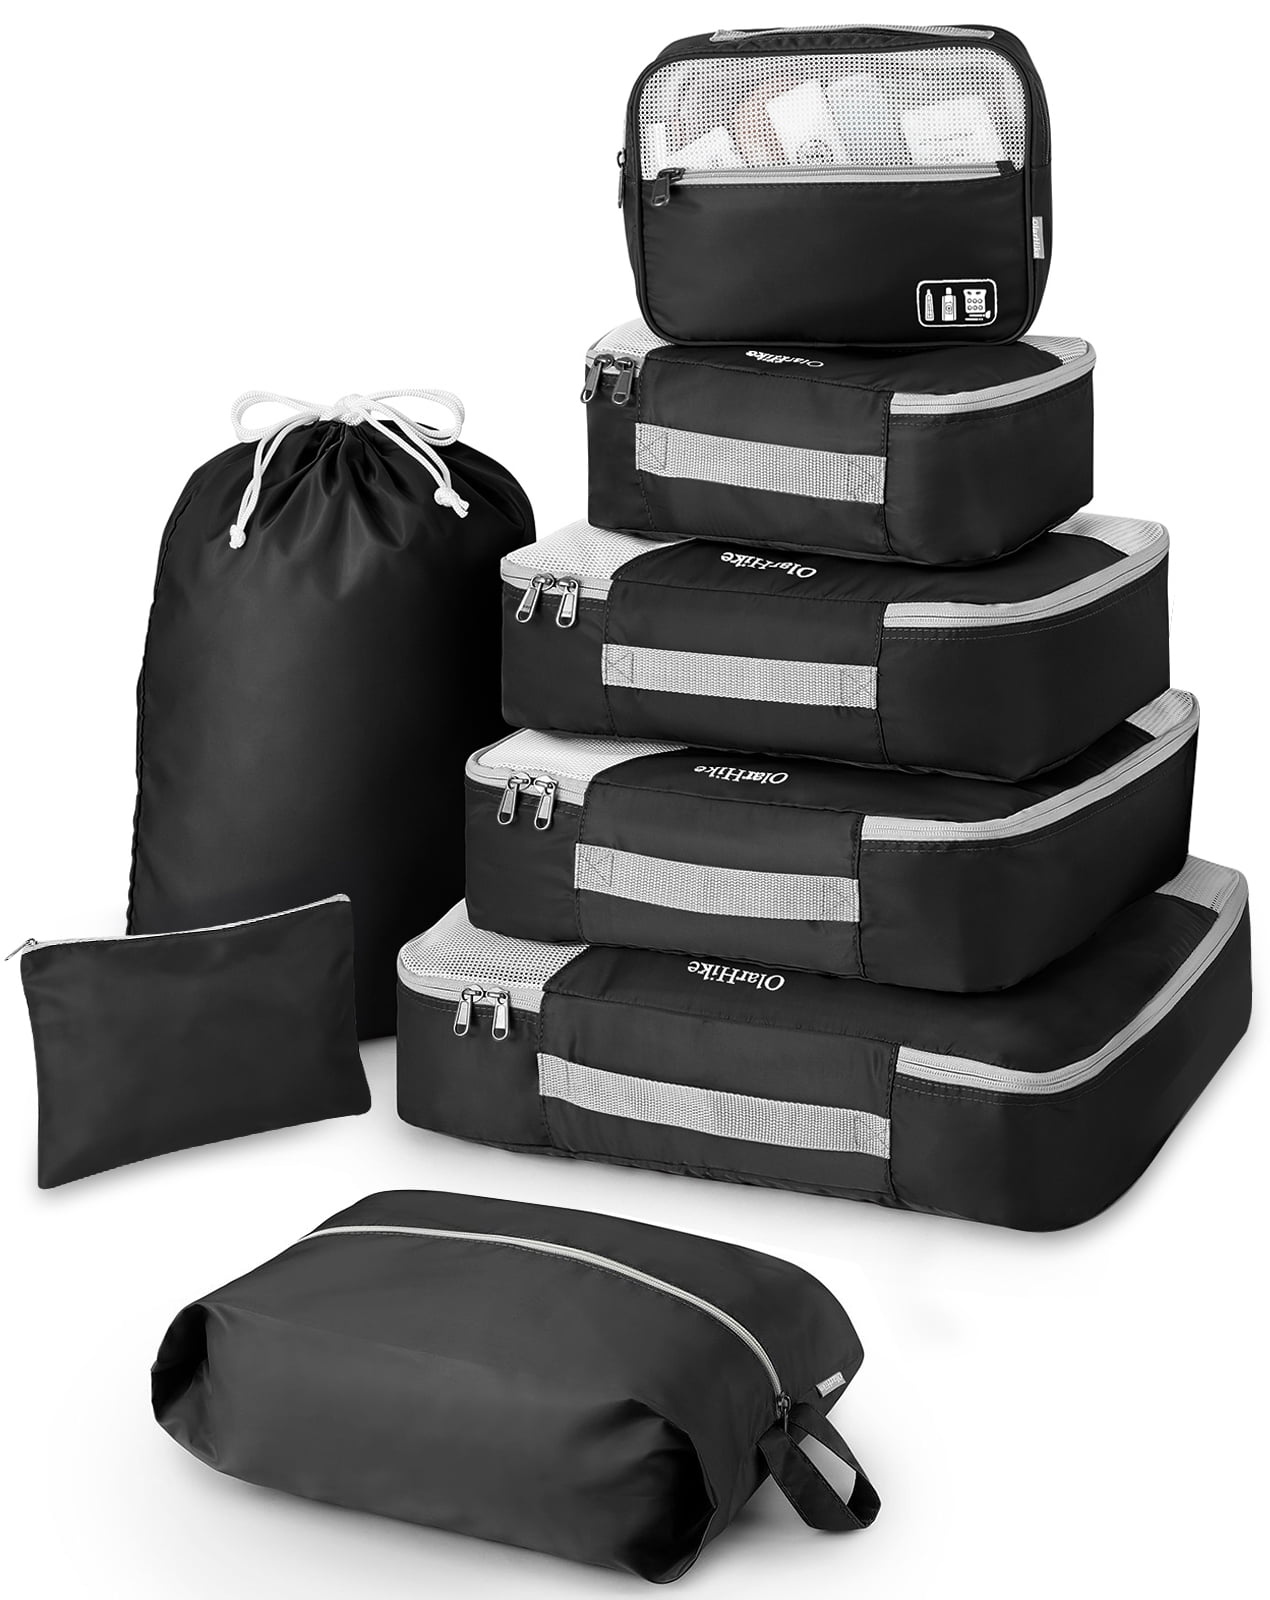 OlarHike Juego de 8 cubos de equipaje para viajes, 4 tamaños diferentes  (extra grande, grande, mediano, pequeño), bolsas organizadoras de equipaje